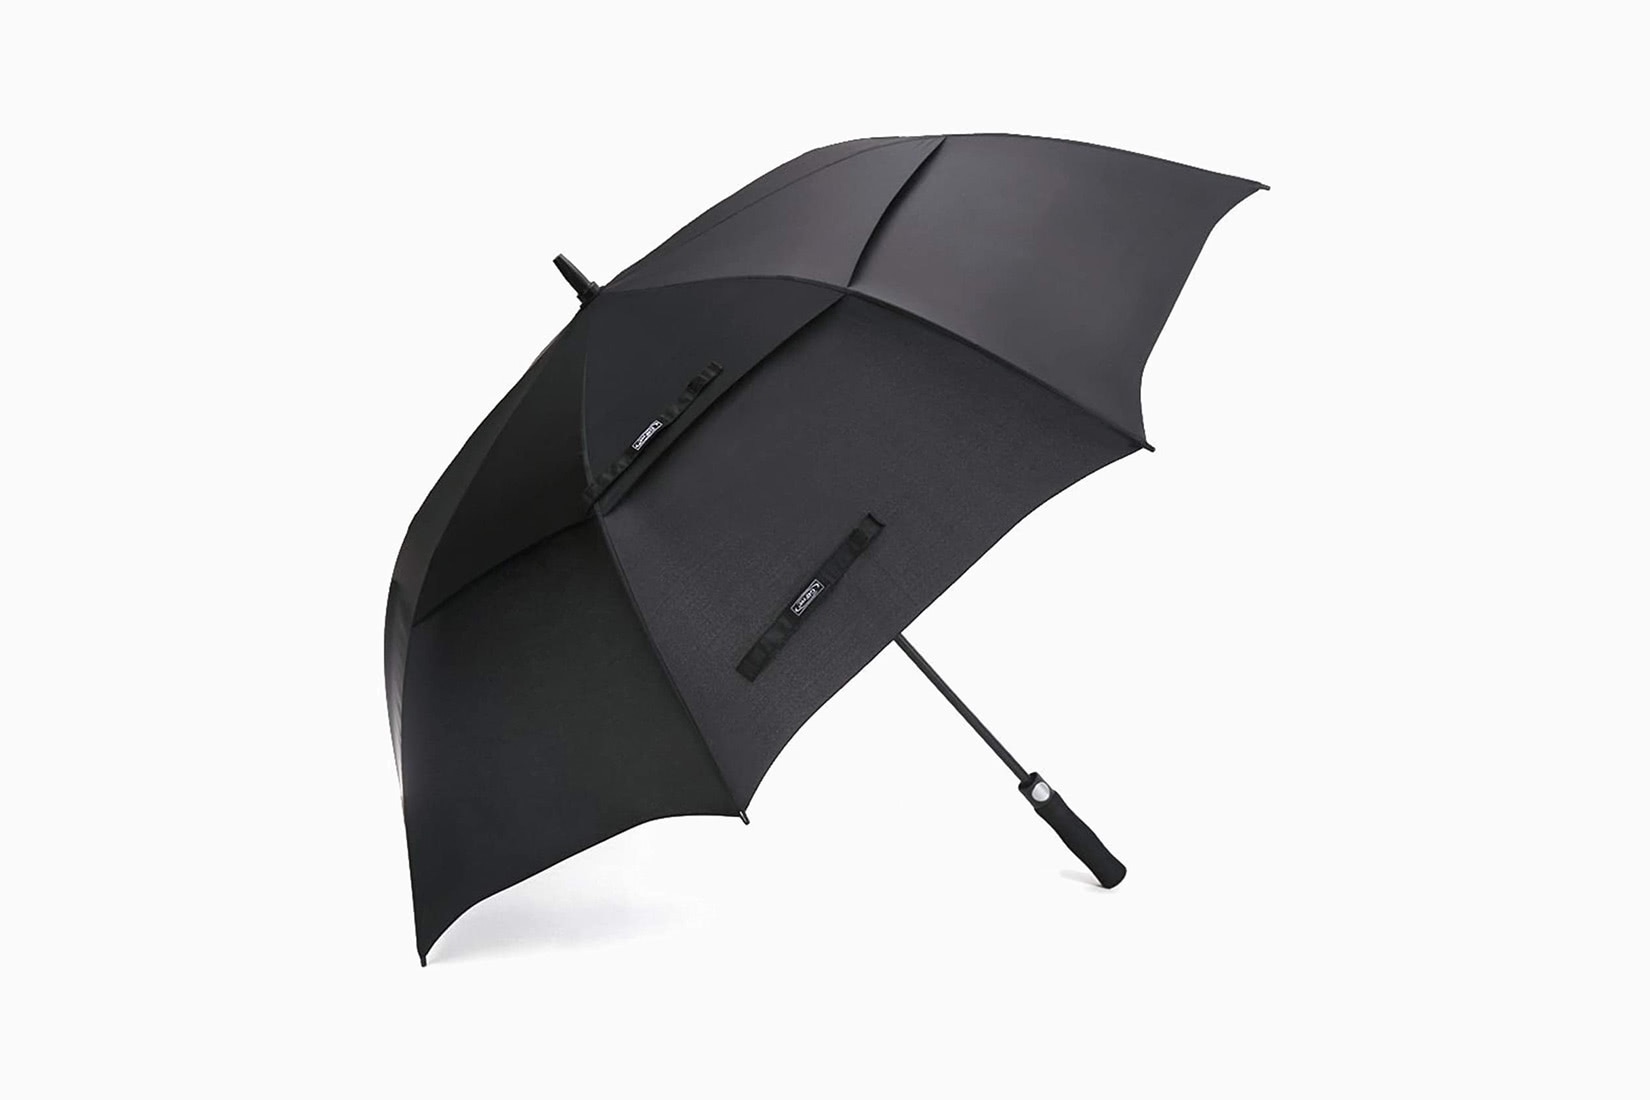 meilleur parapluie g4free parapluie de golf luxe digital